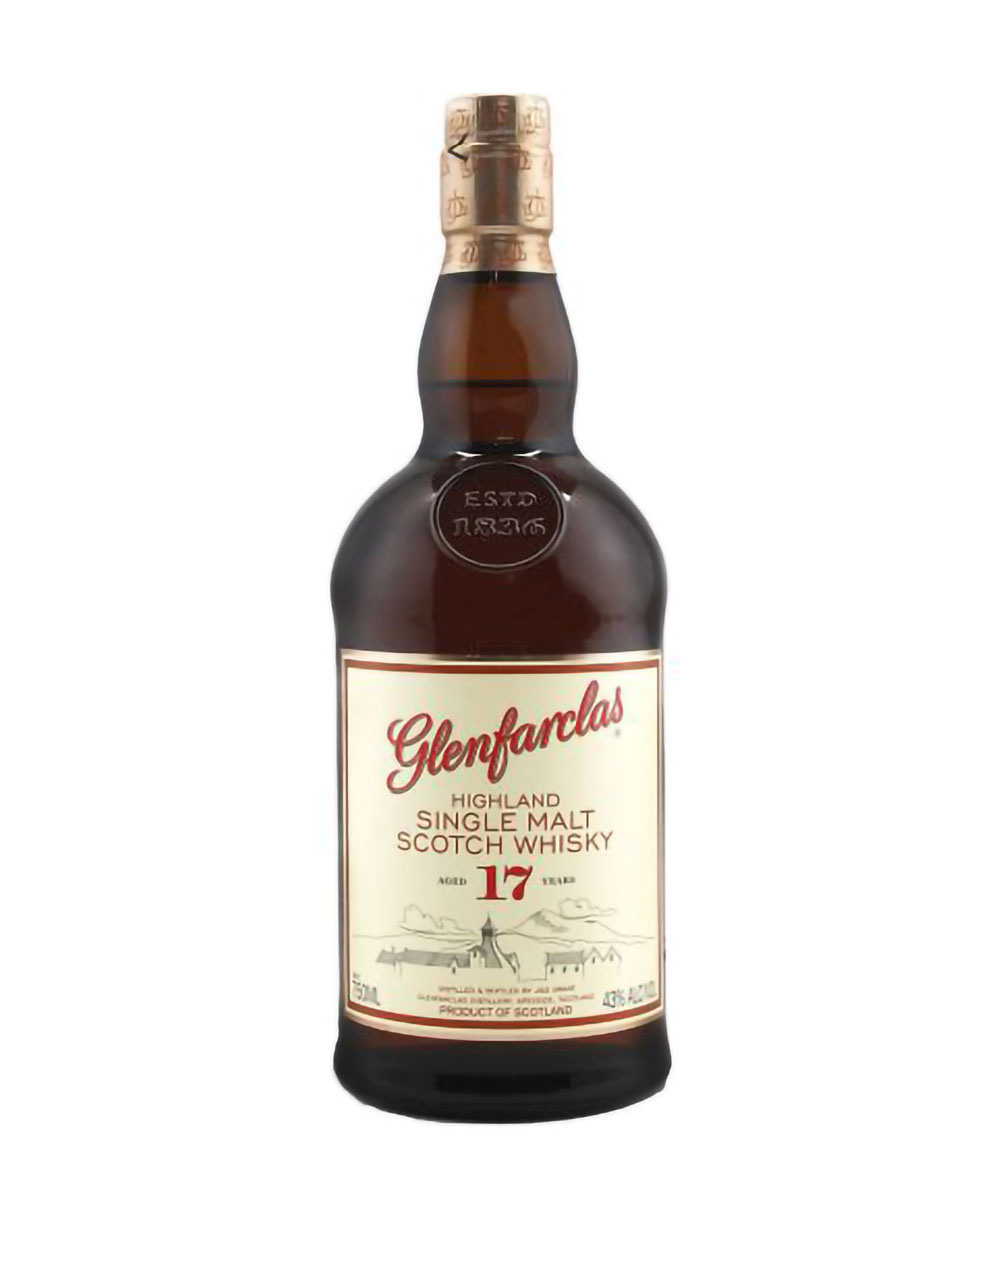 Glenfarclas 17 Year Old Single Malt Scotch Whisky